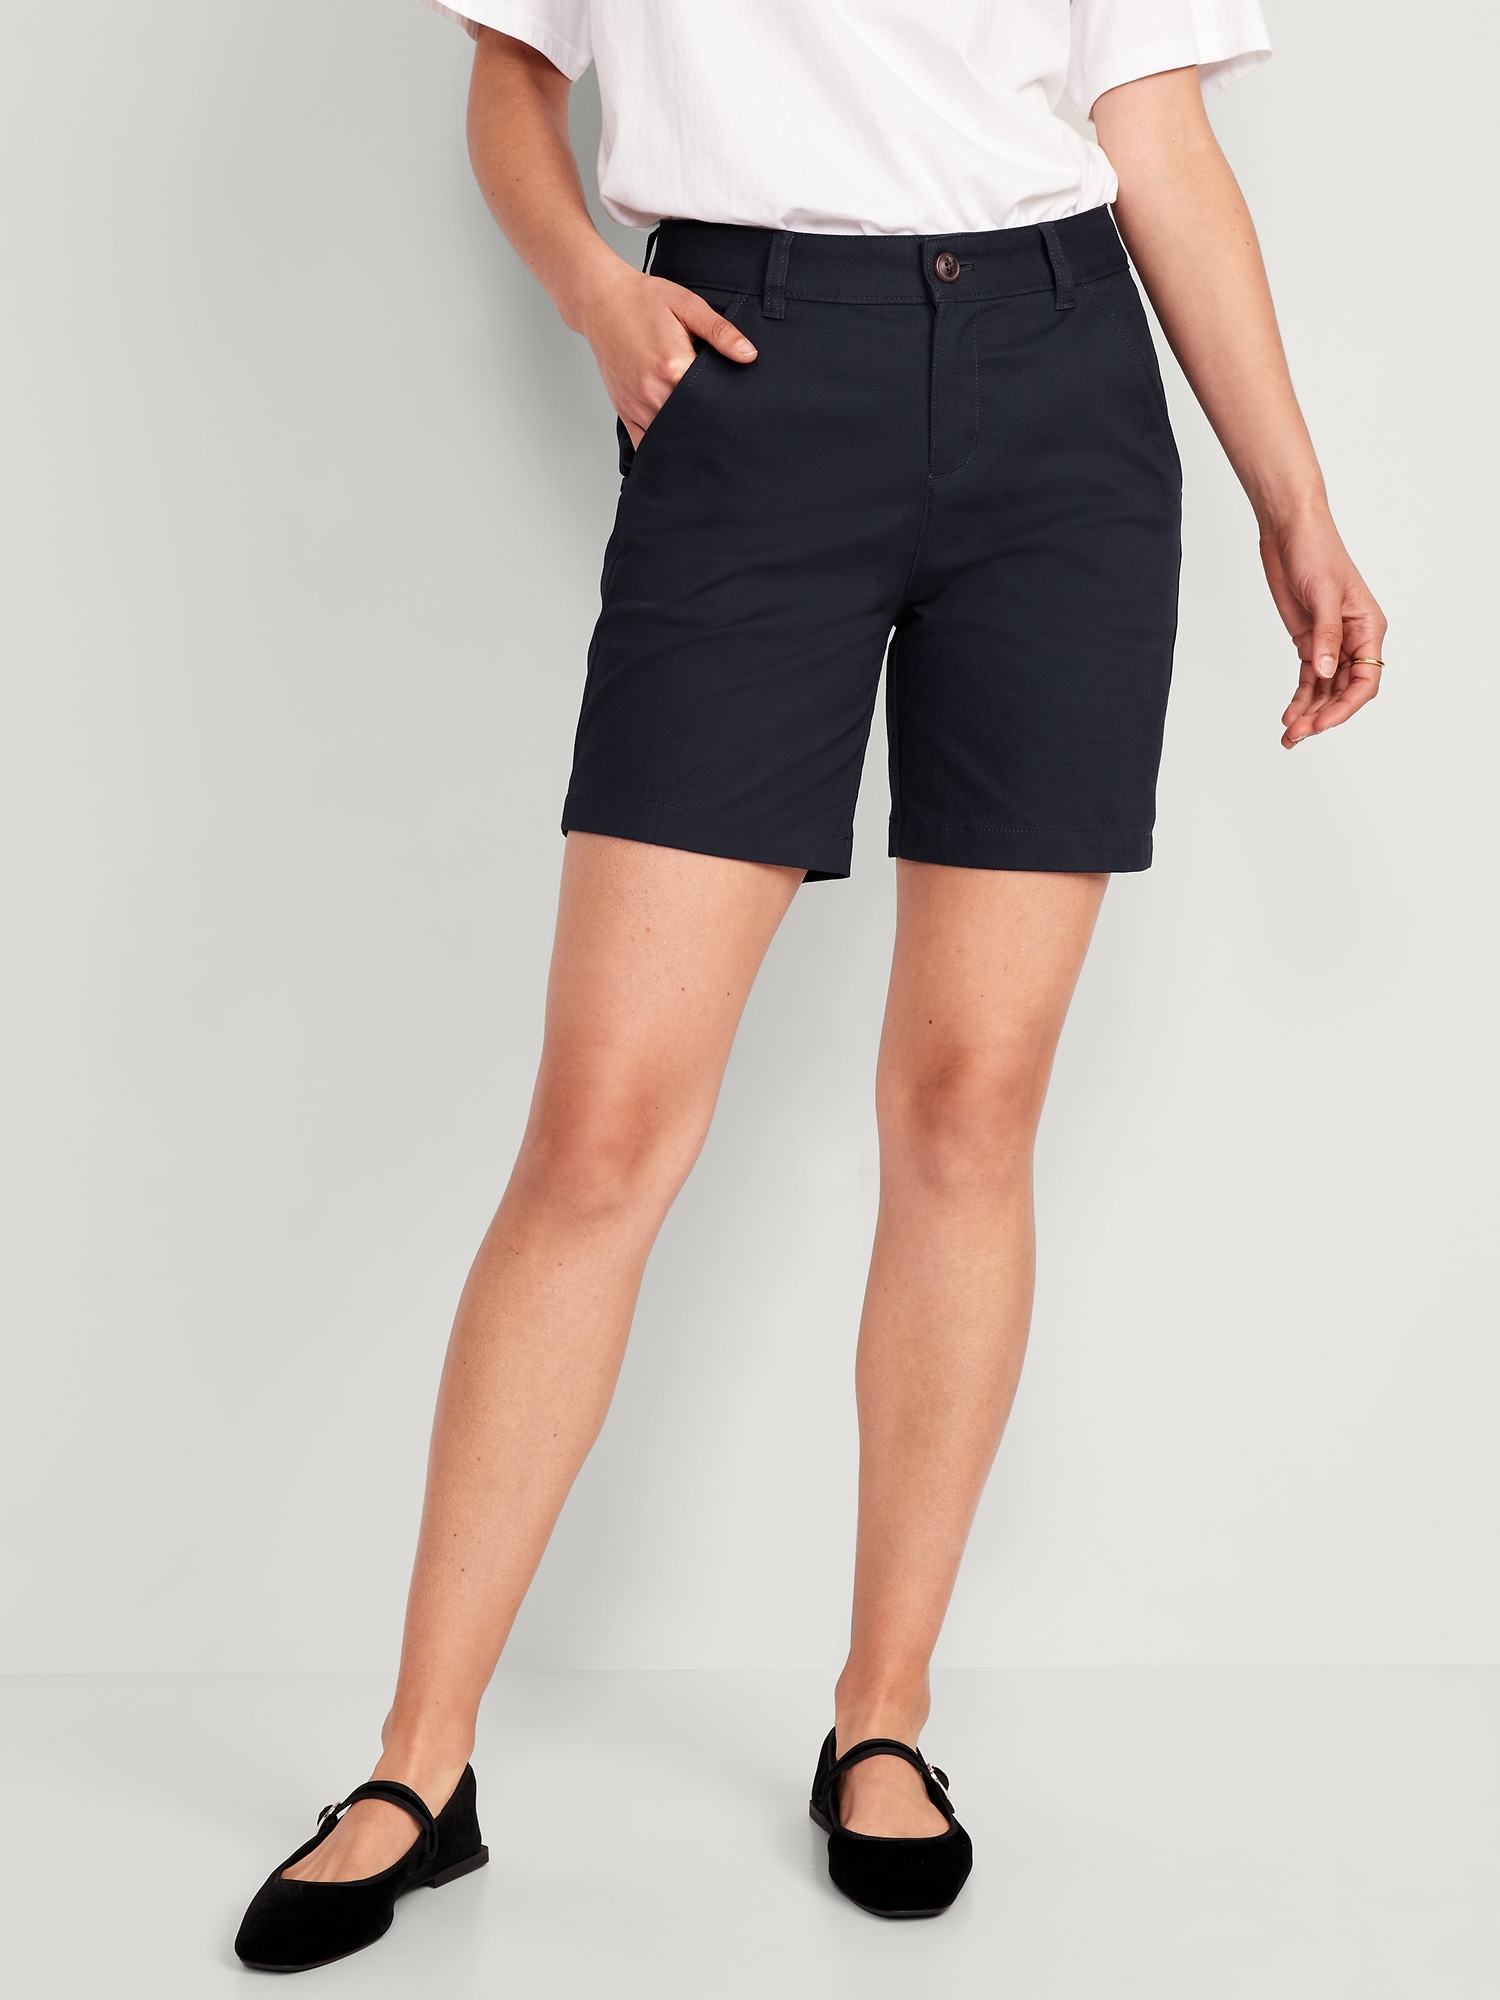  Bermuda Shorts For Women